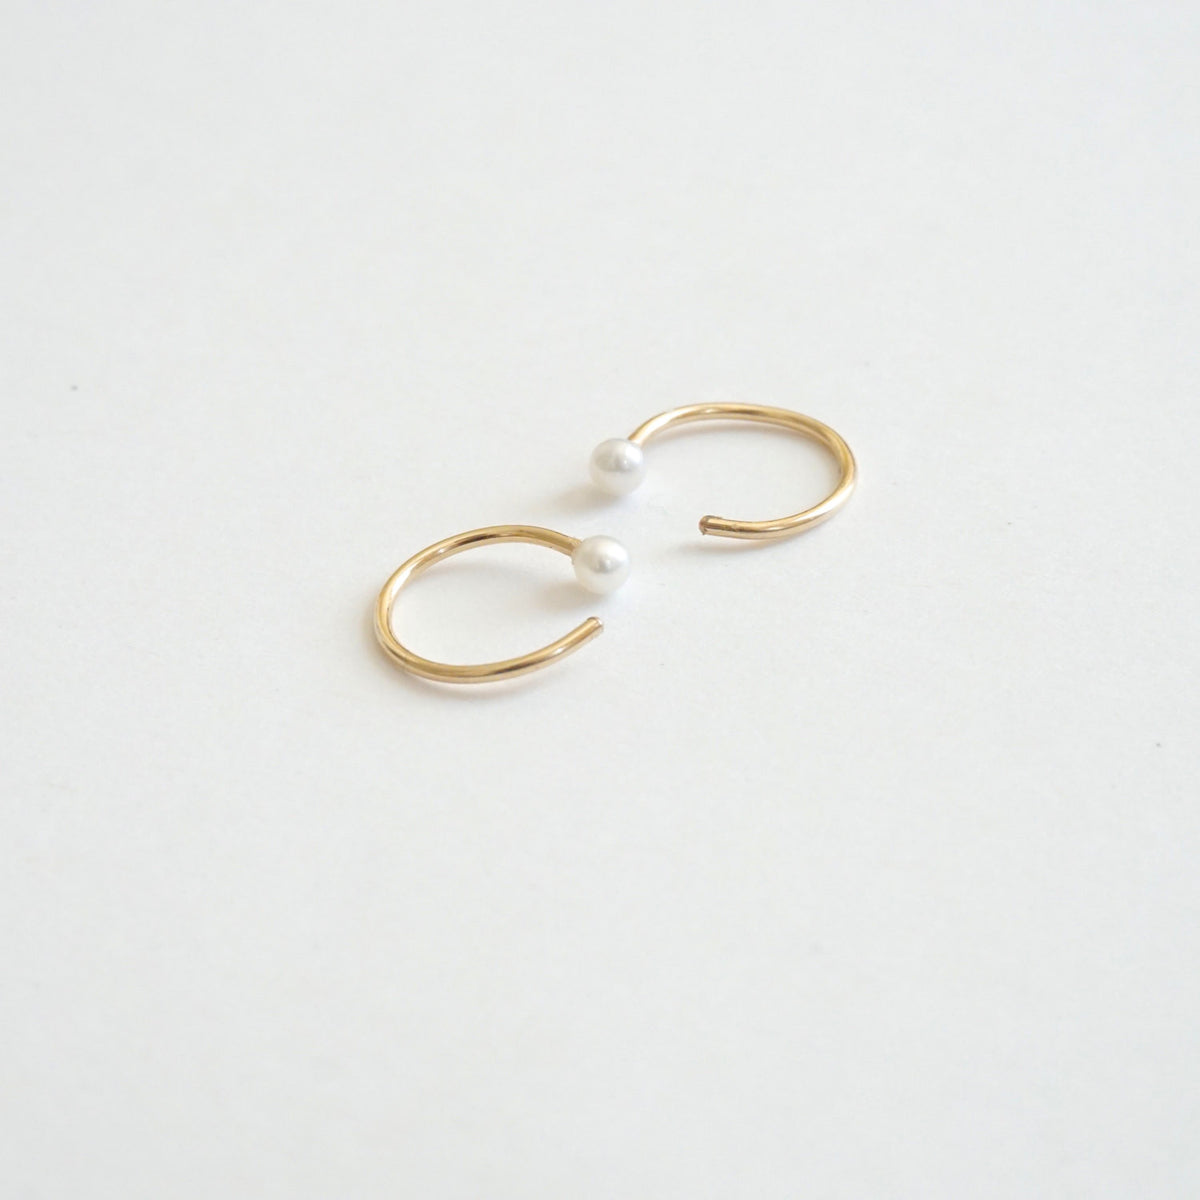 Elegant And Well Designed Hand-Made Tiny Pearl Hugging Hoop Earrings - 0270 - Virginia Wynne Designs